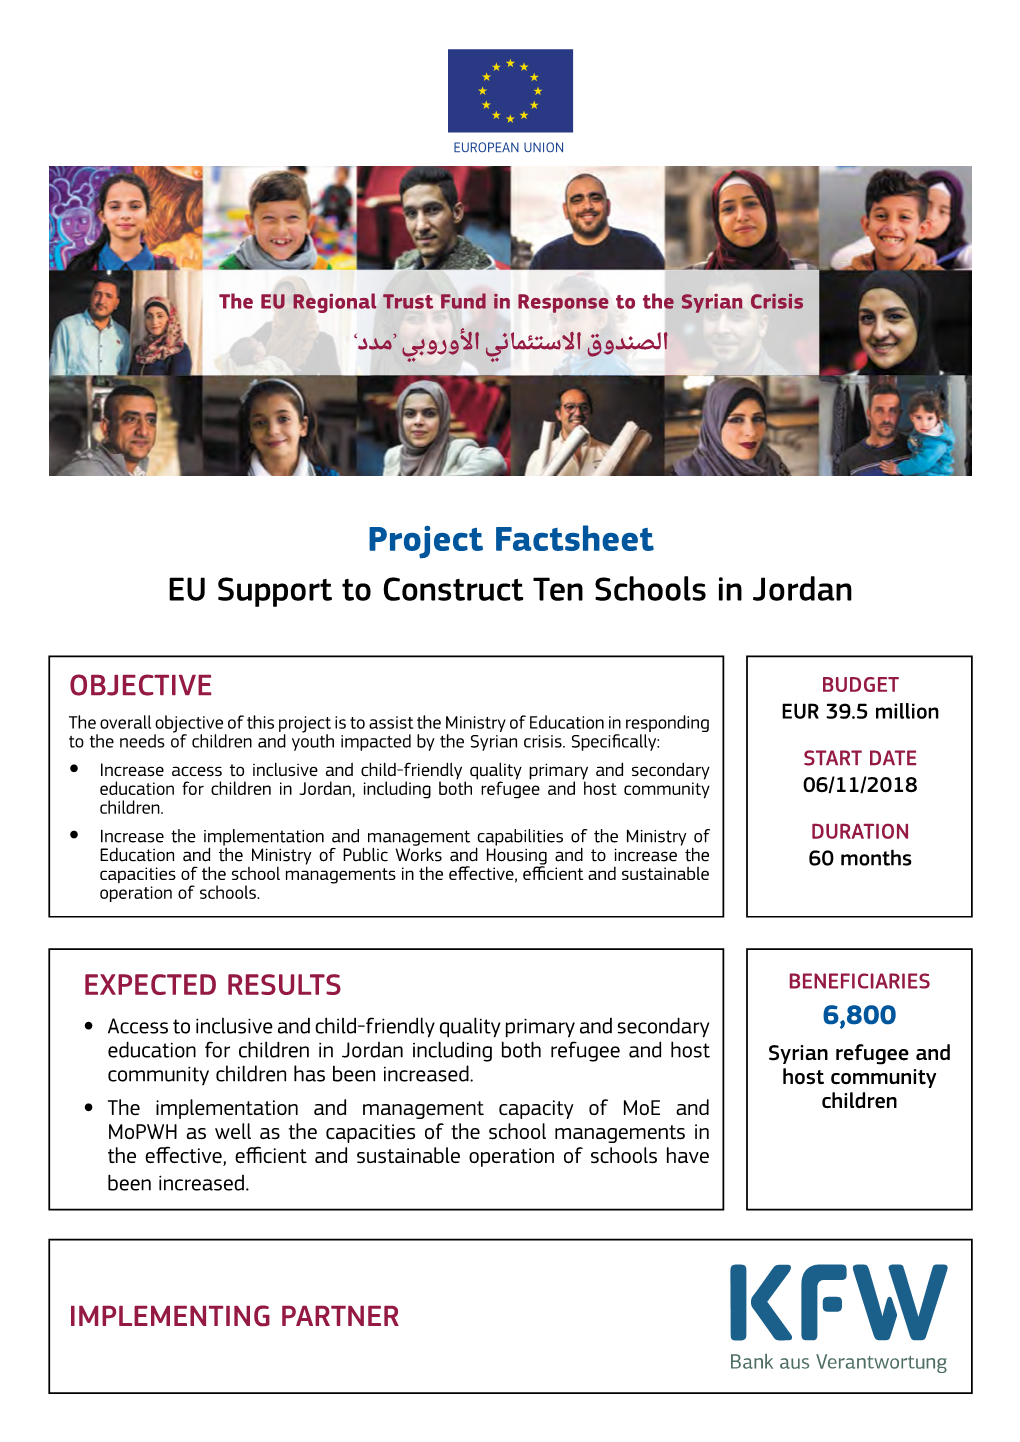 Project Factsheet EU Support to Construct Ten Schools in Jordan